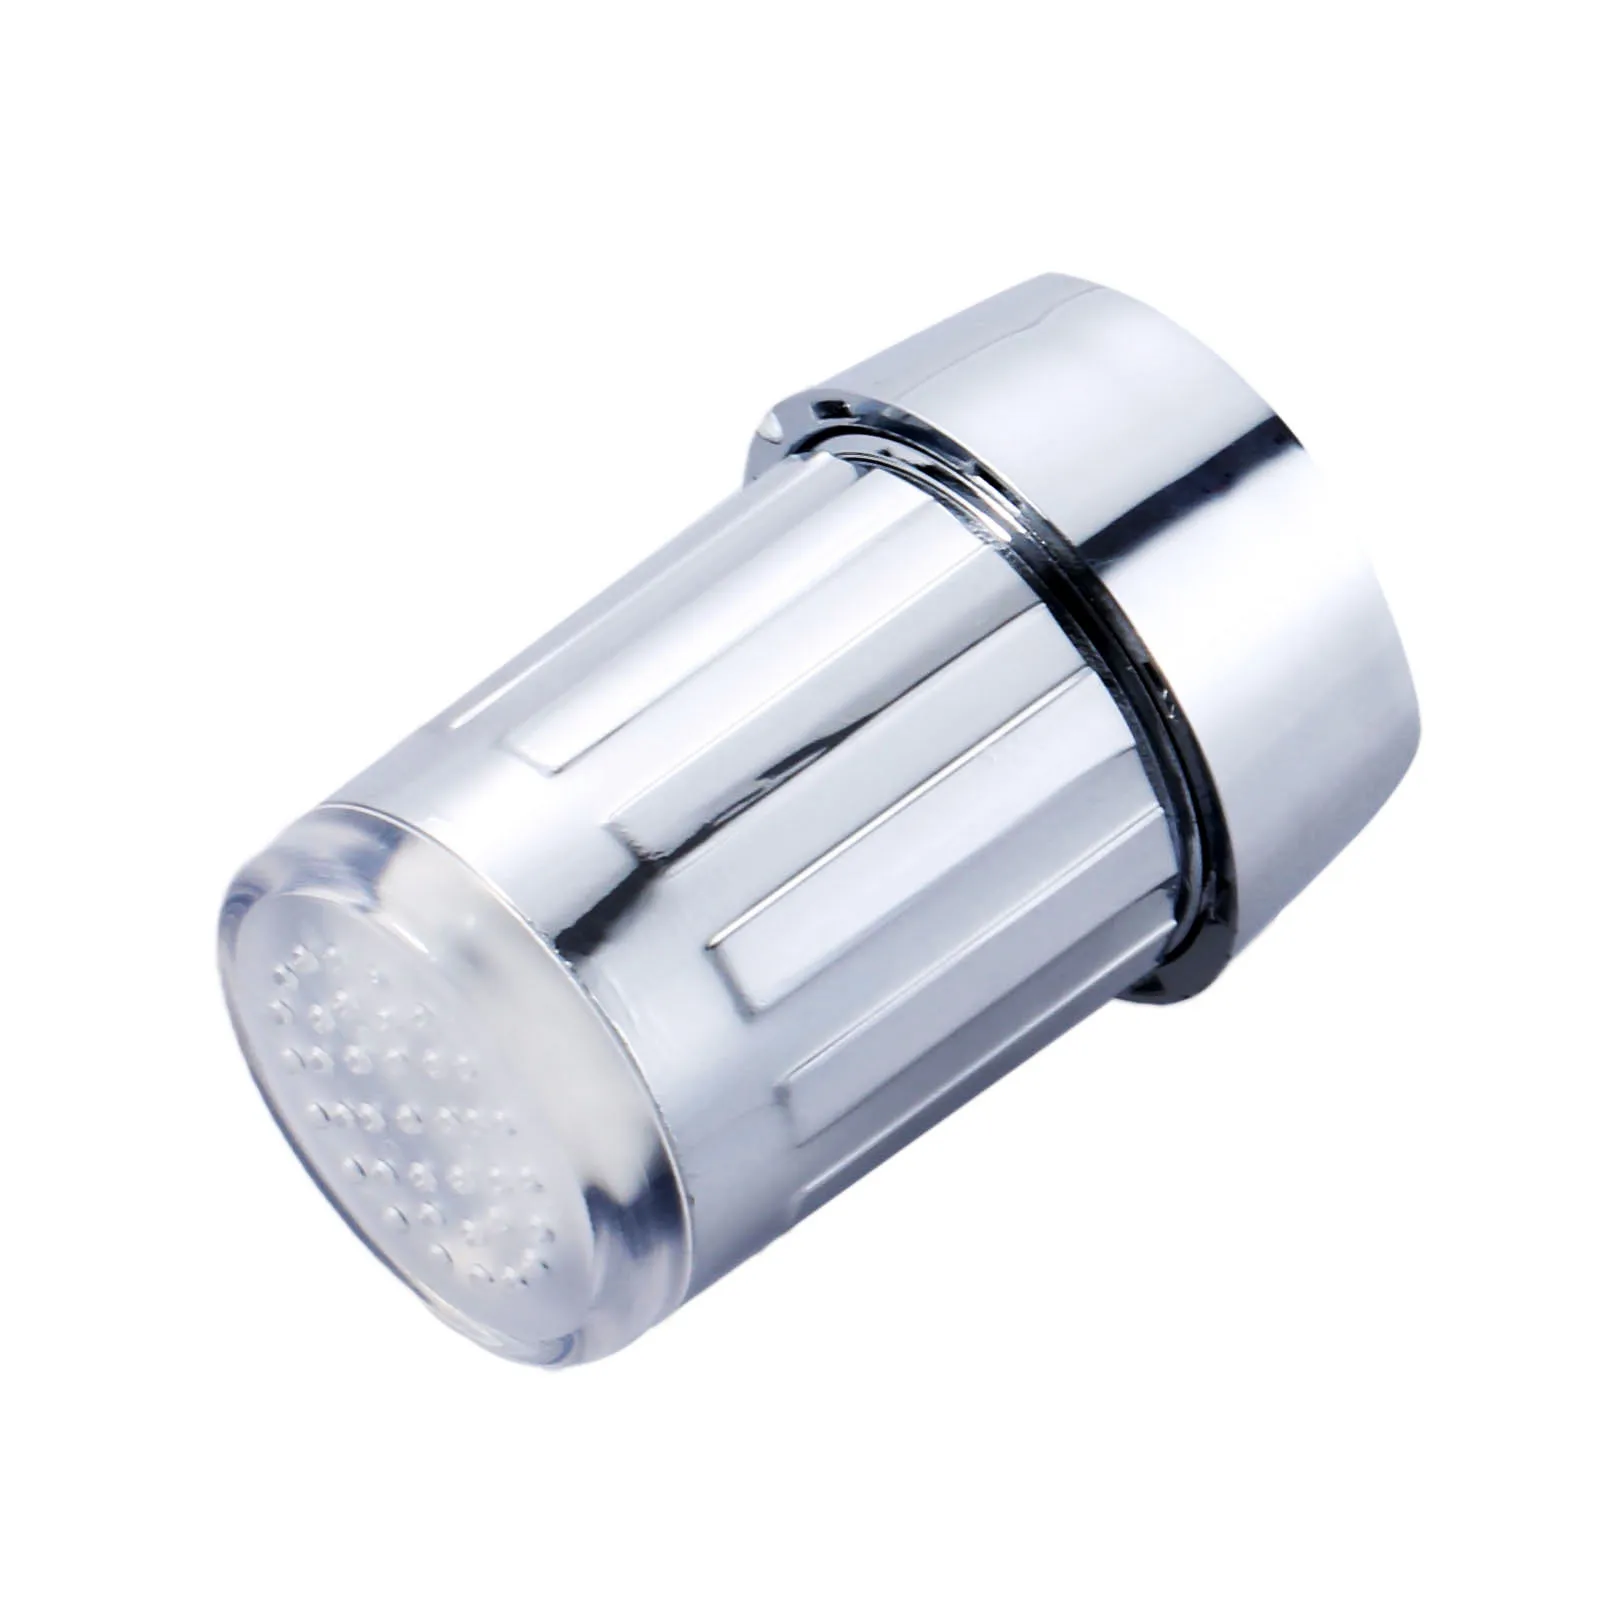 ABS Светодиодный водопроводный кран свет 7 цветов изменяющееся свечение душ ванная кухня кран лампа контроль температуры свет с адаптером